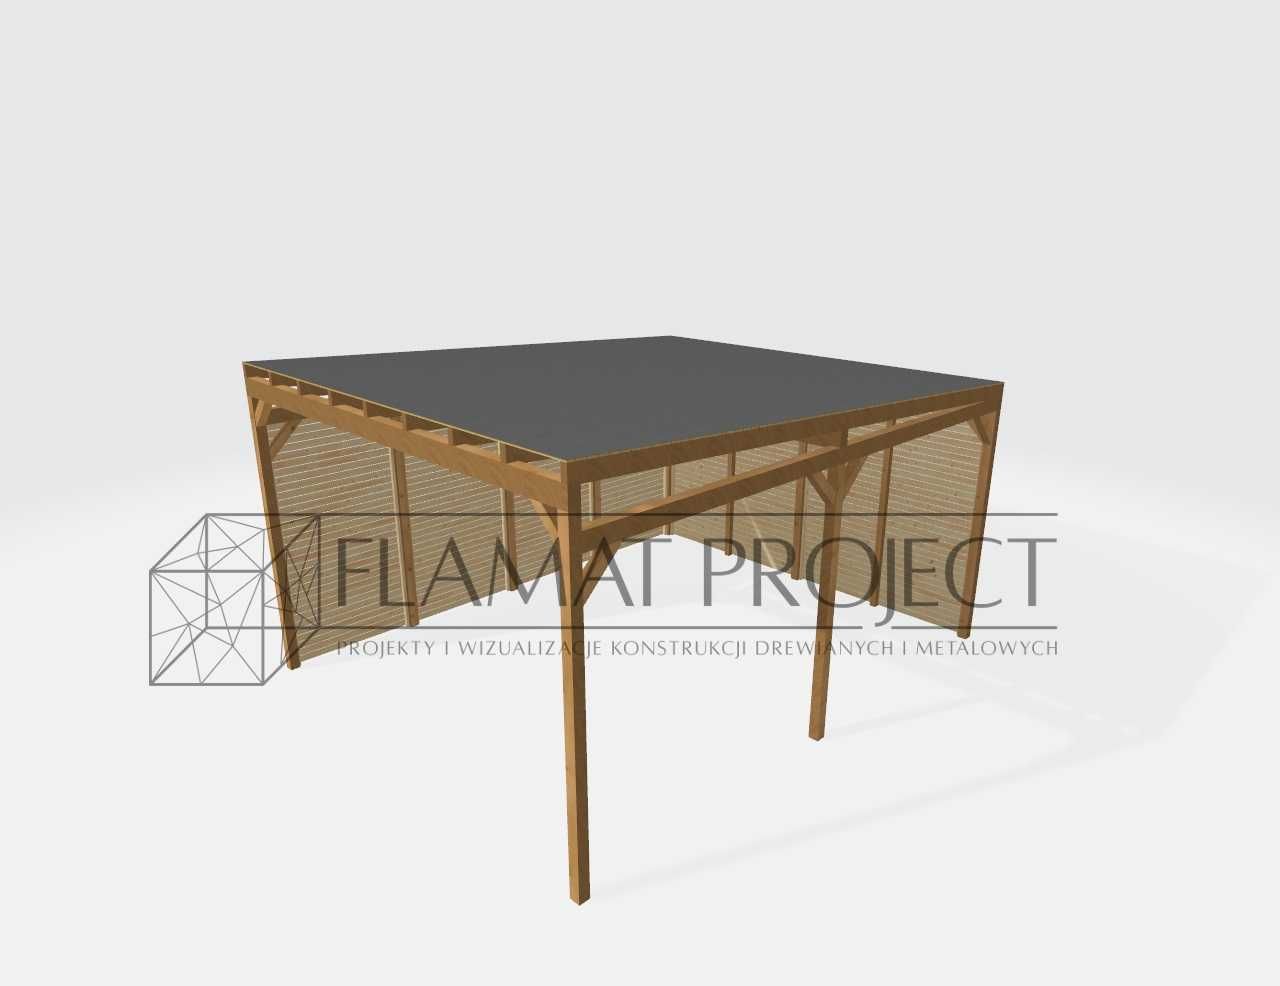 Projekt i wizualizacja konstrukcji drewnianych i metalowych